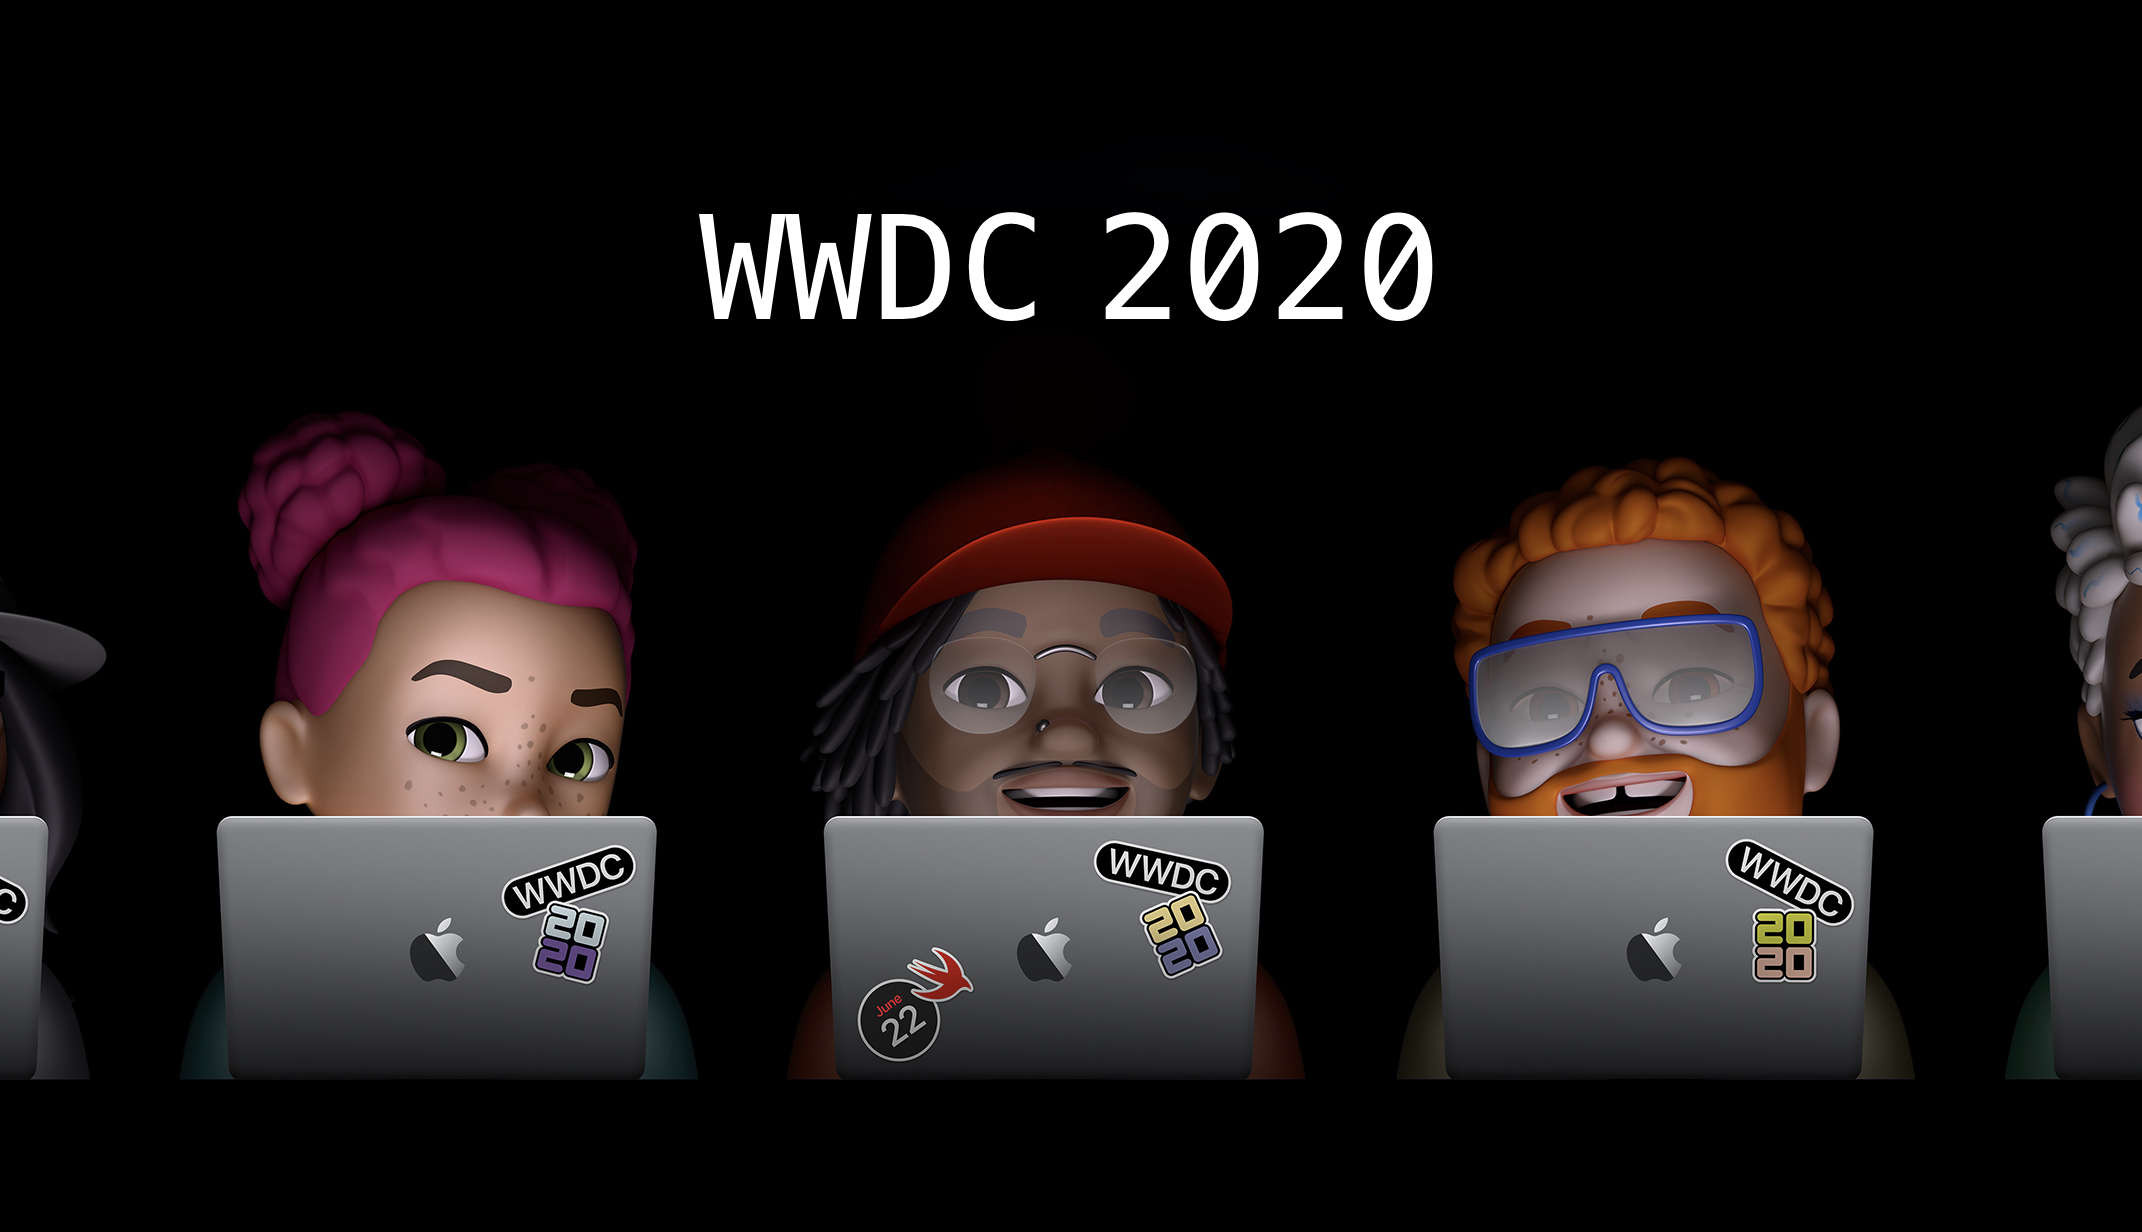 WWDC 2020 am 22. Juni 2020